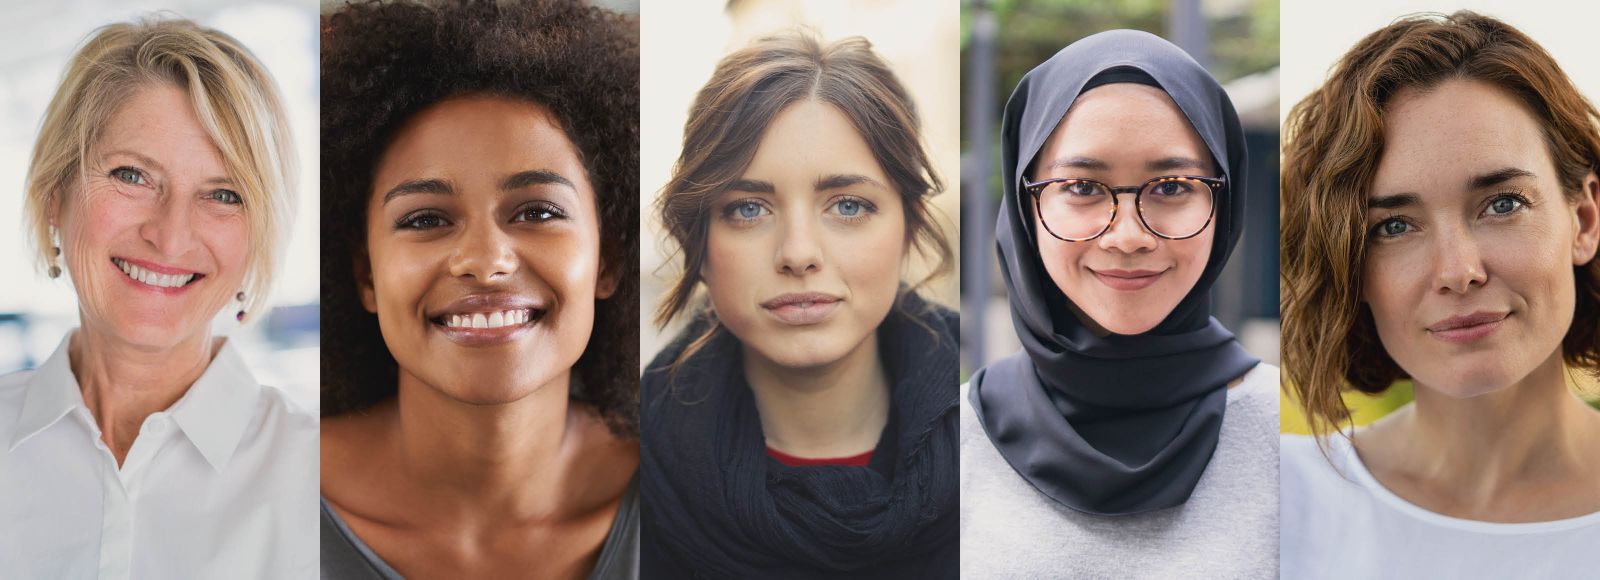 Fotocollage: Portraits von 5 Frauen unterschiedlichen Alters.